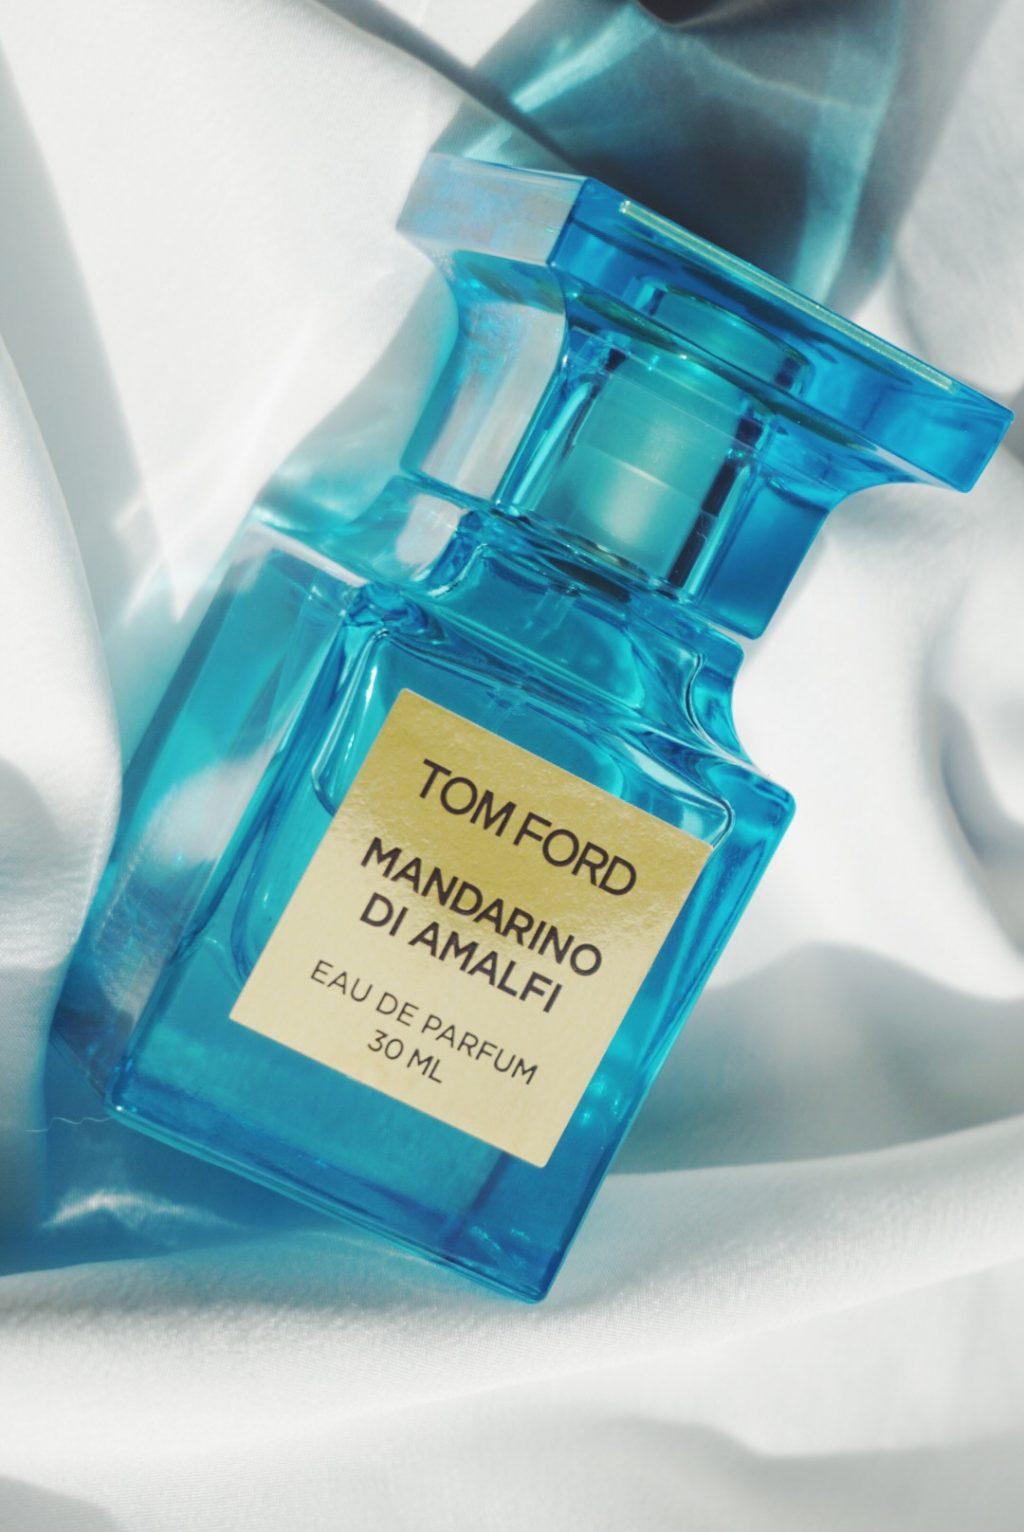 TOP 10 nước hoa Tom Ford mùi hương thơm lâu quyến rũ nhất - BlogAnChoi